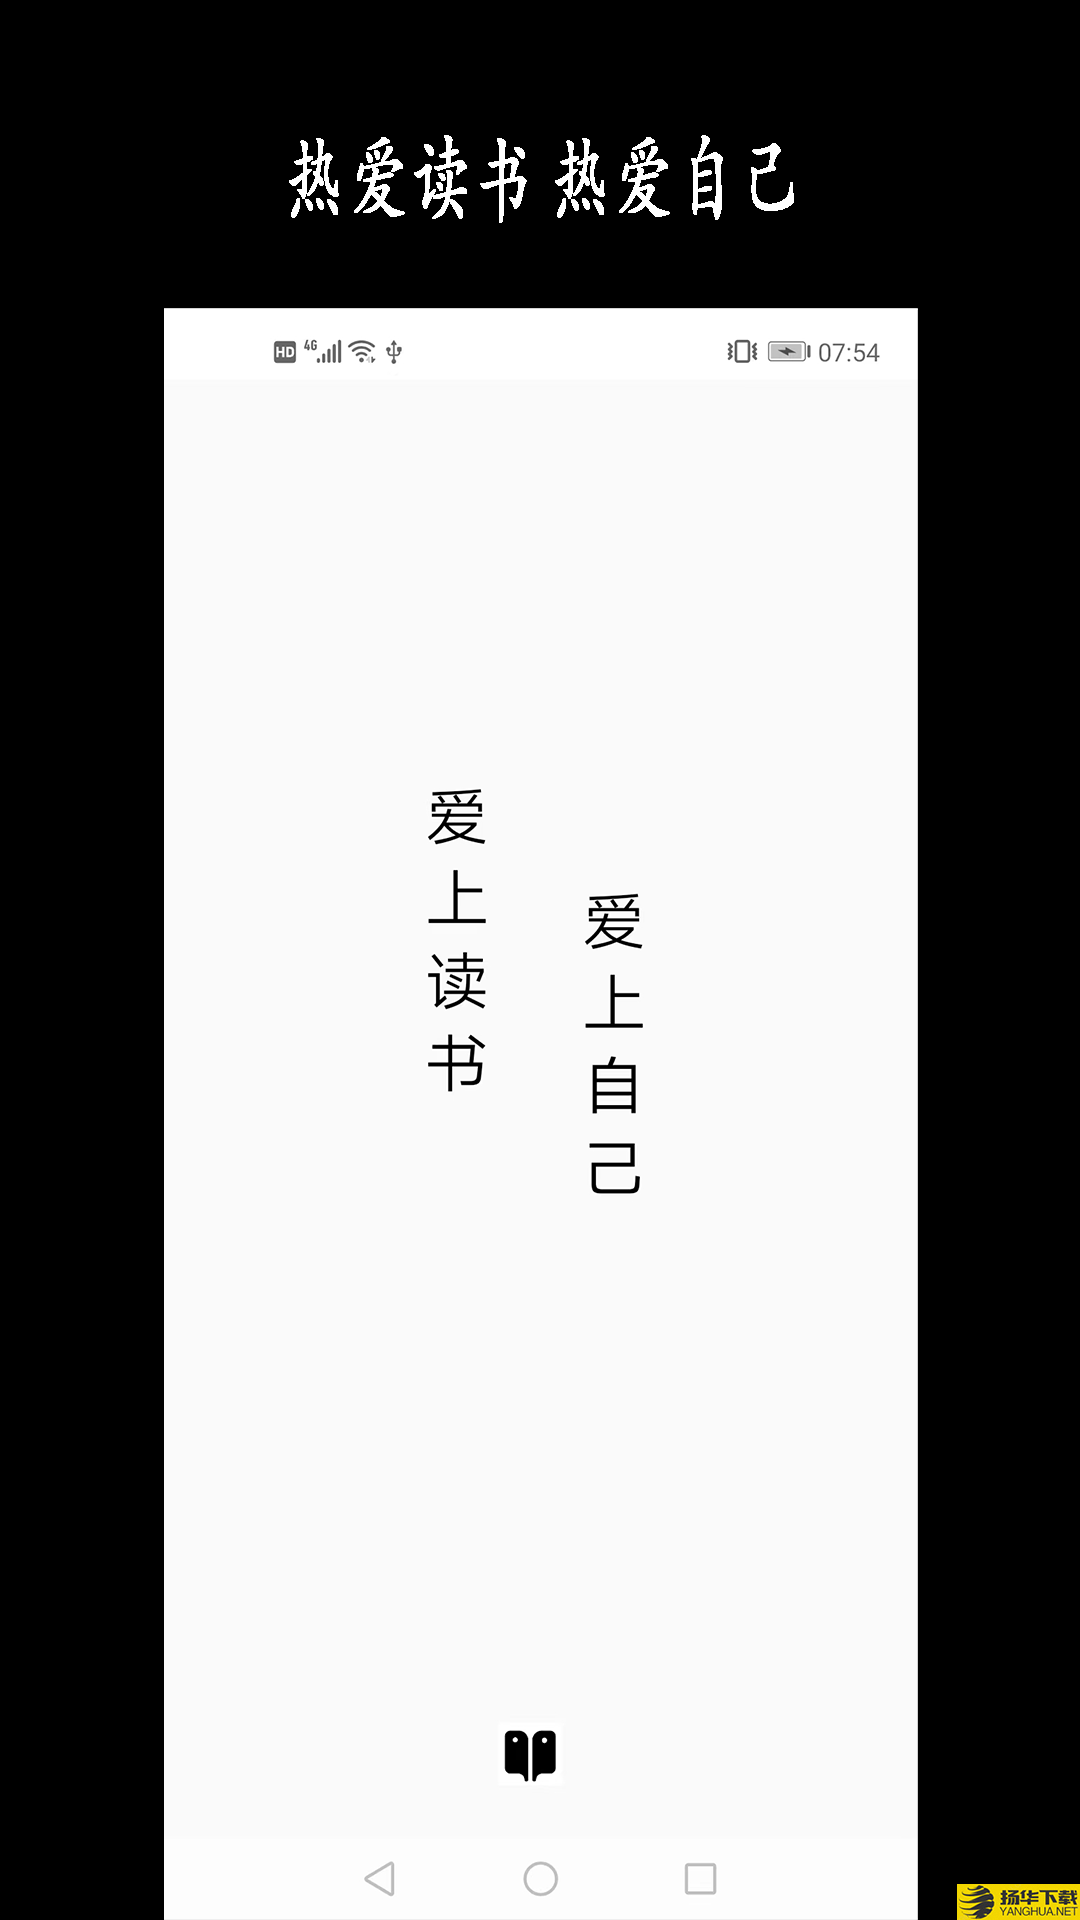 新阳读书记录app下载_新阳读书记录app最新版免费下载